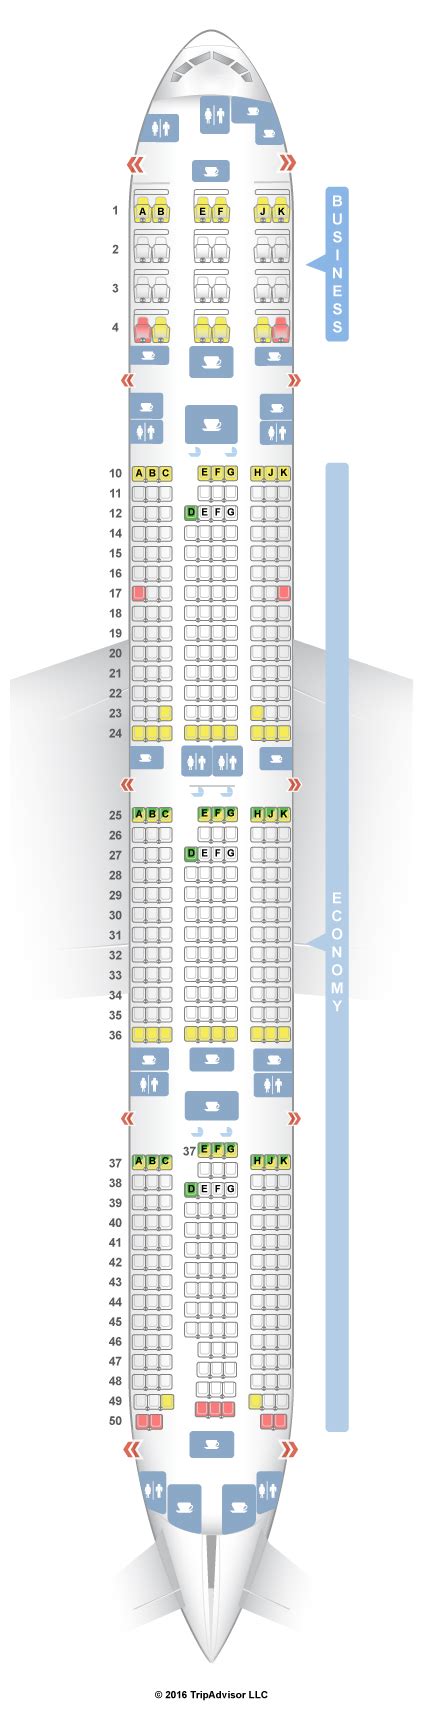 Seatguru Seat Map Qatar Airways Boeing Er W V